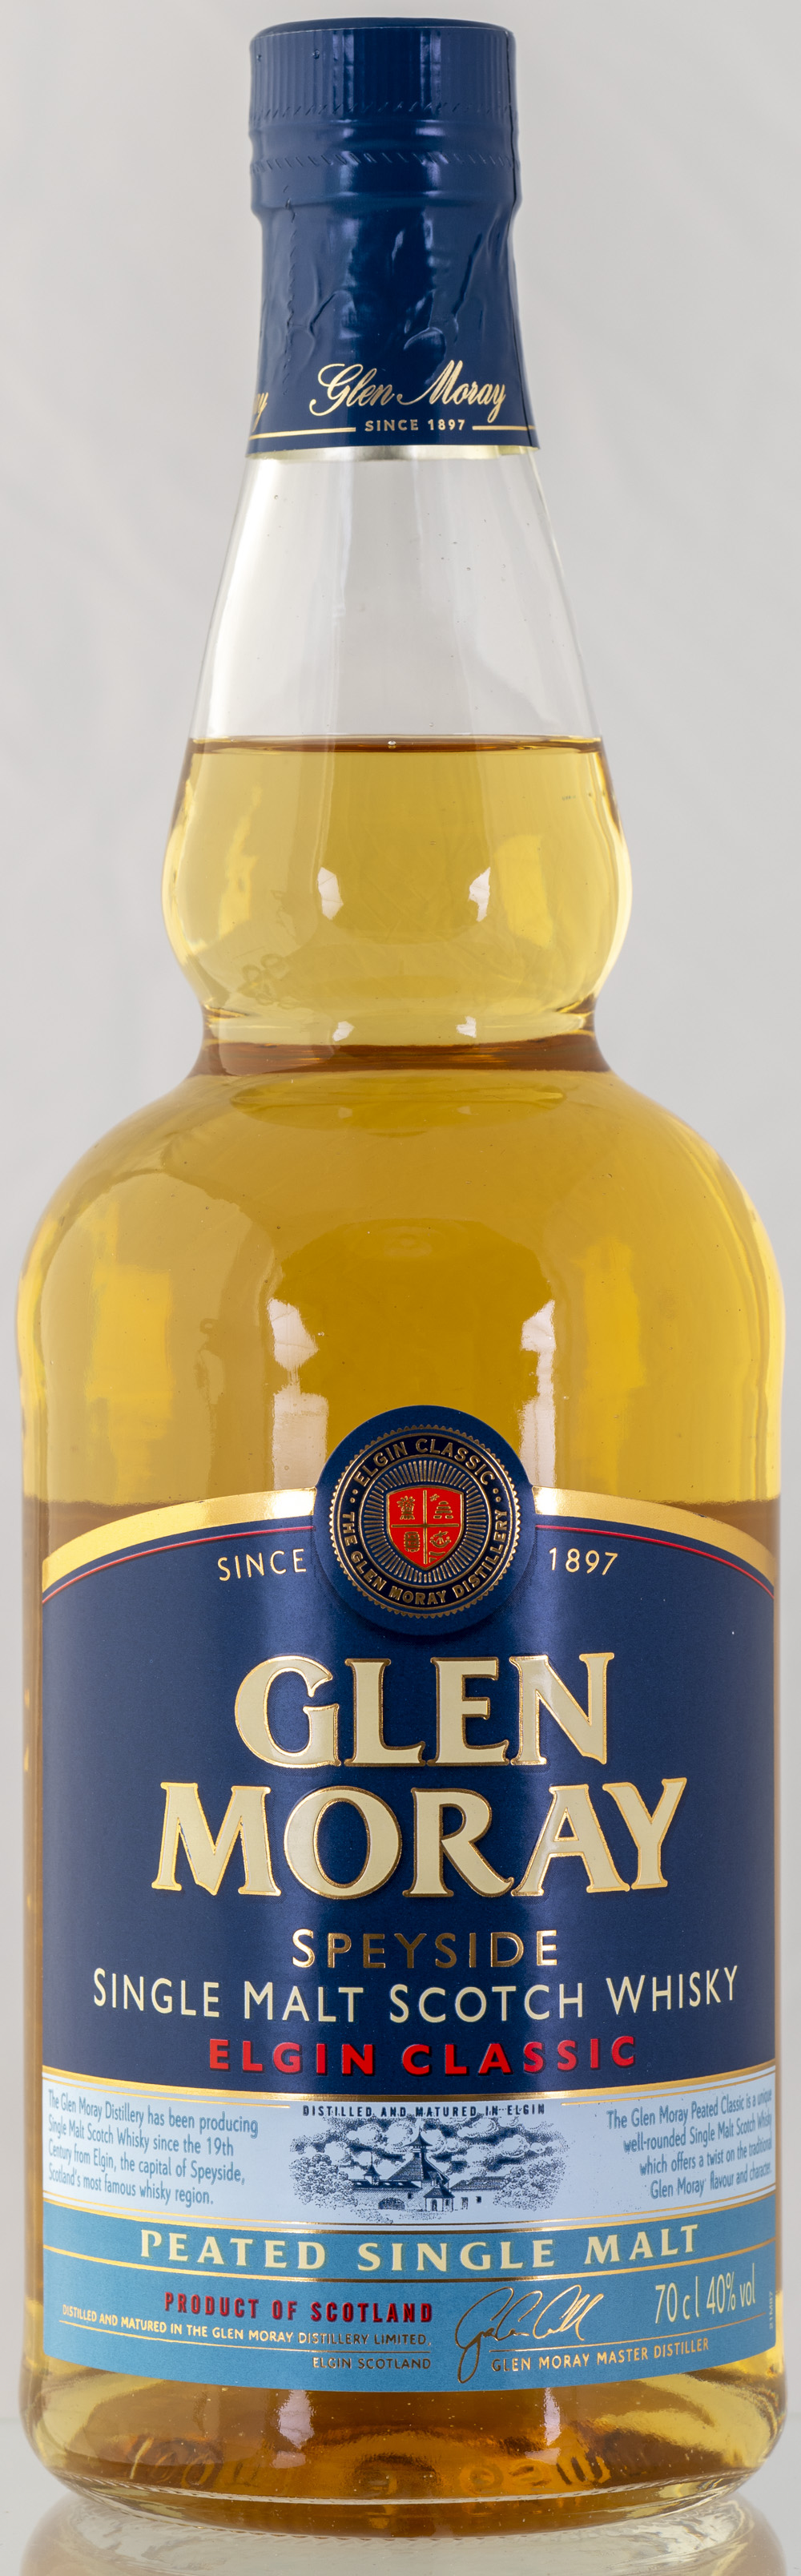 Billede: PHC_2272 - Glen Moray - Elgin Classic Peated - bottle front.jpg